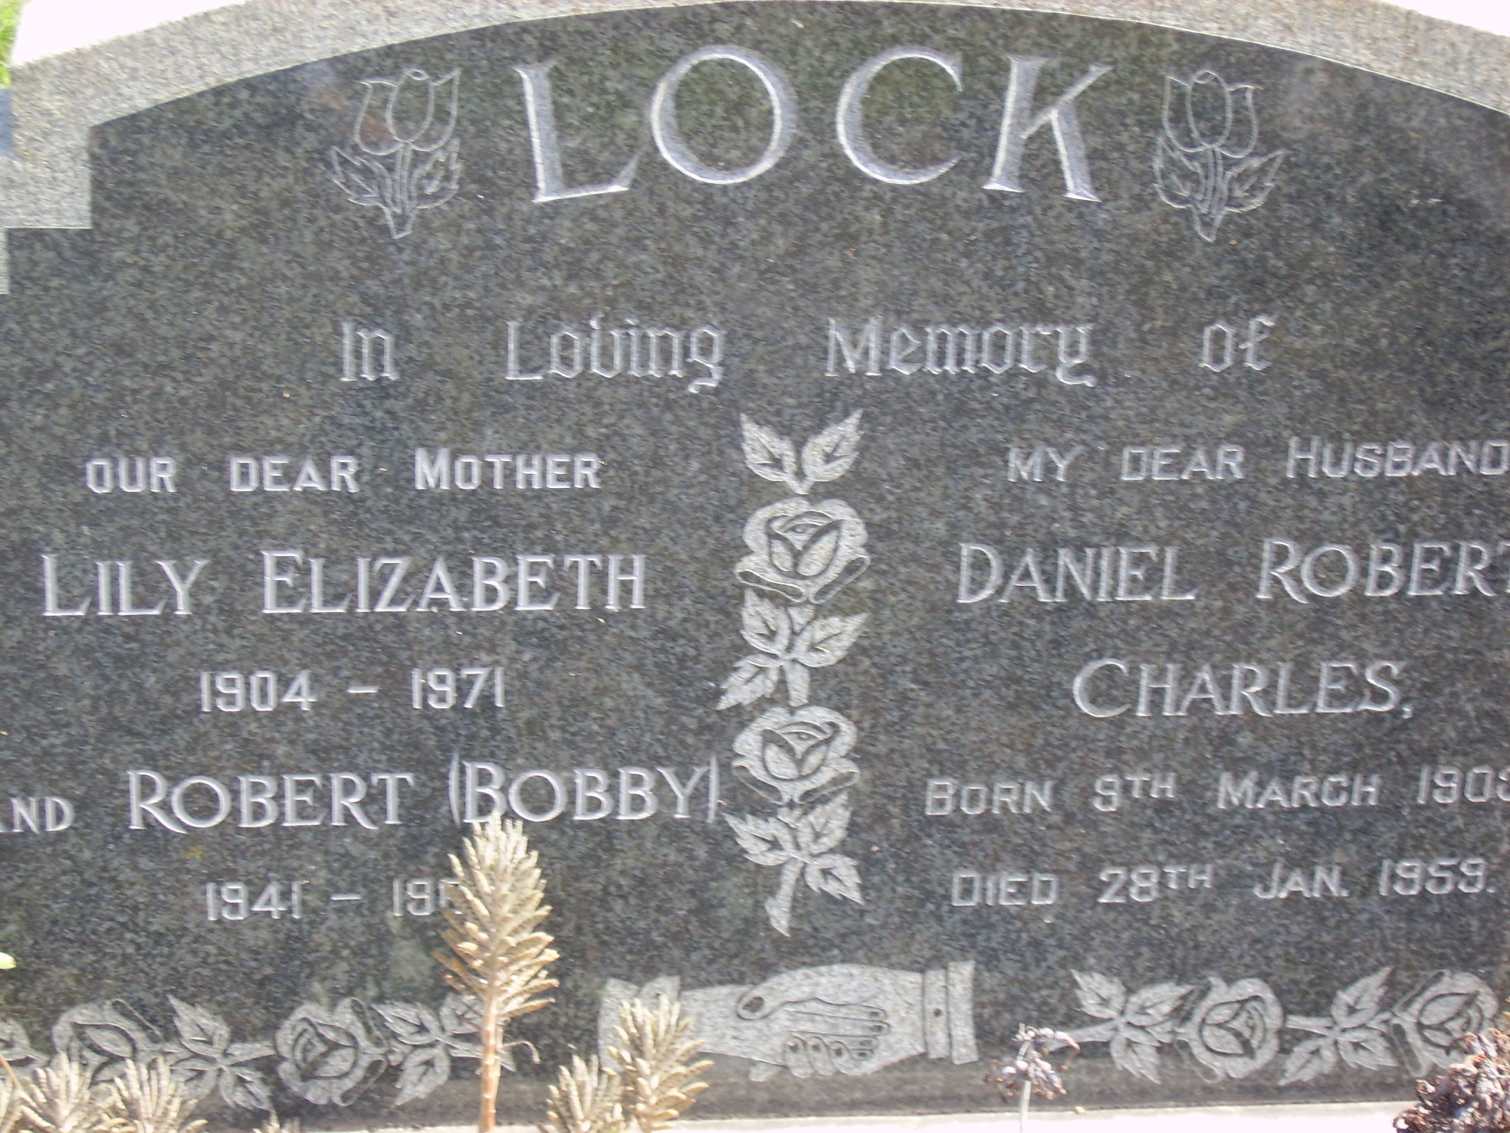 LOCK Robert 1941-19? & Lily Elizabeth 1904-1972 :: LOCK Daniel Robert Charles 190?-1959